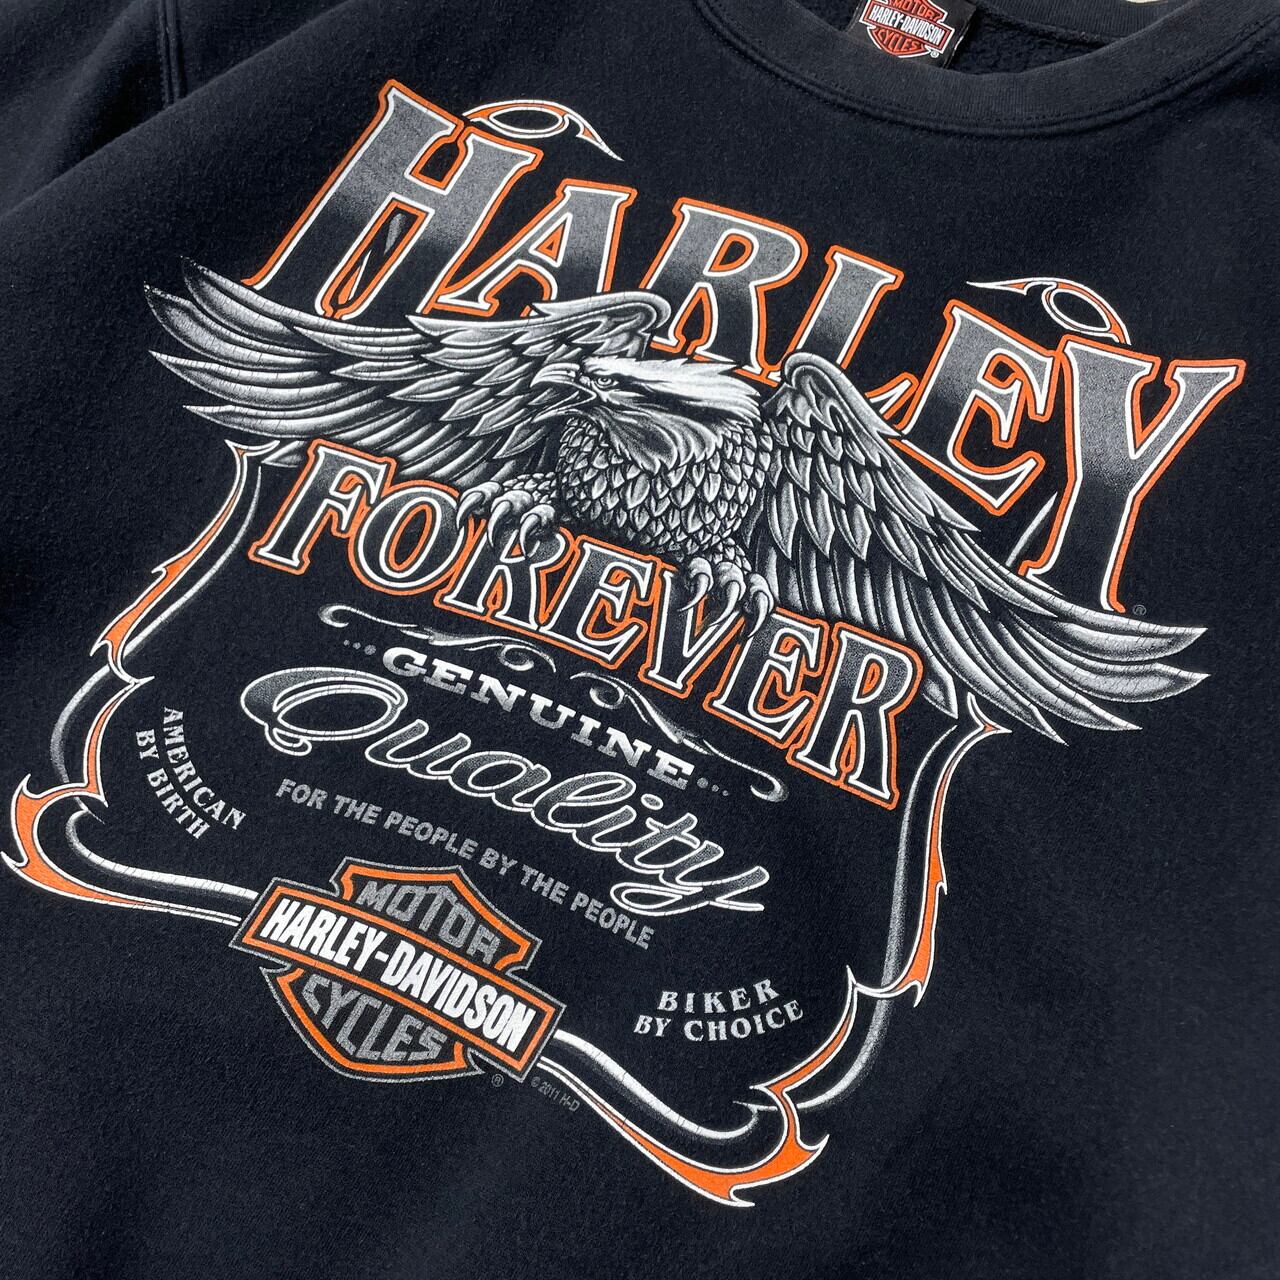 00年代 Harley-Davidson ハーレーダビッドソン イーグル プリント スウェットシャツ メンズM